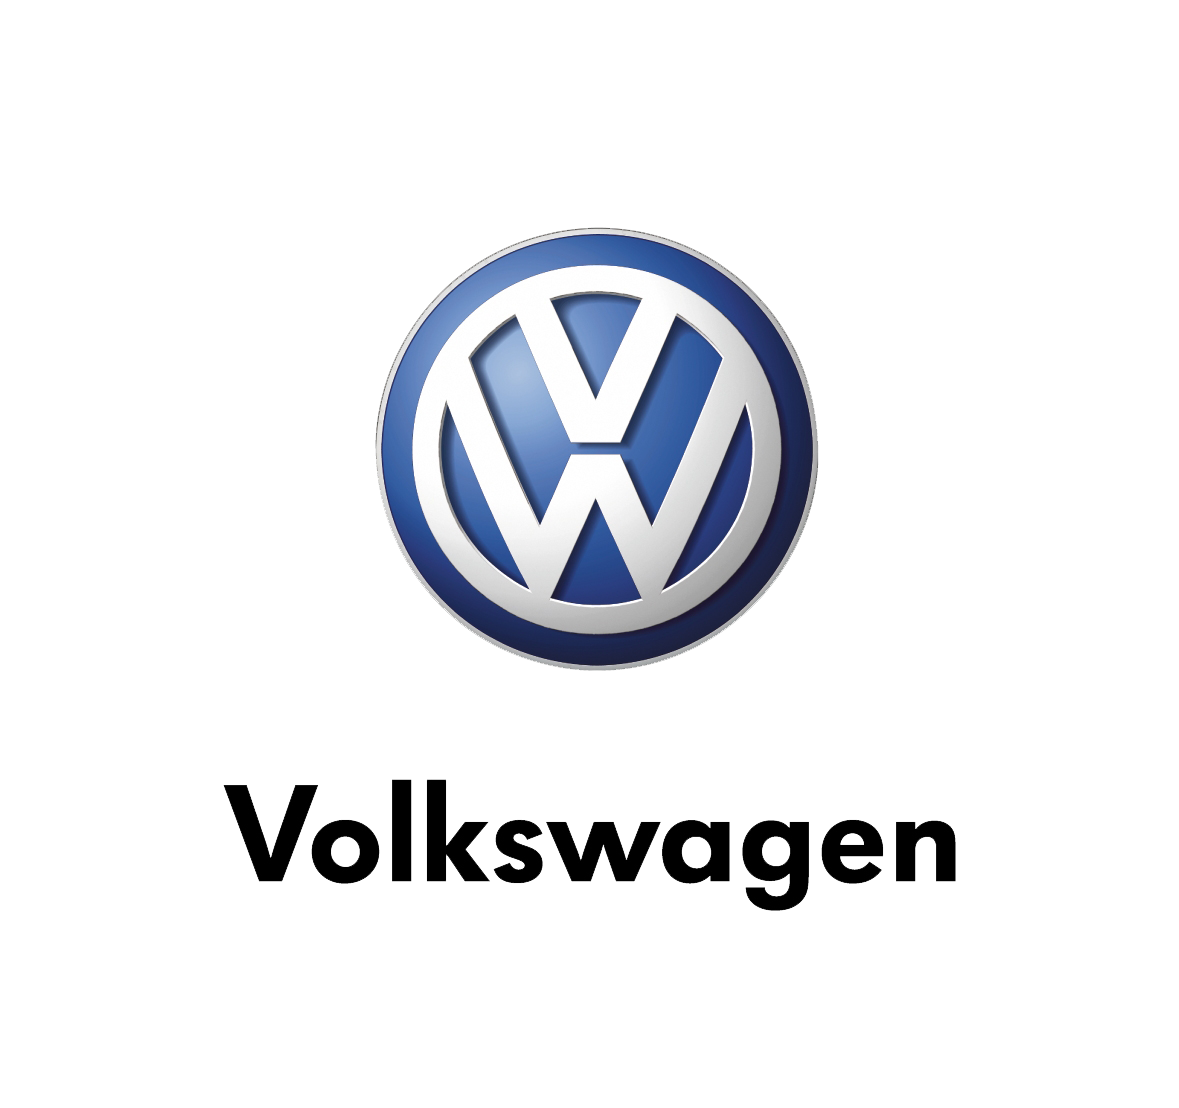 Volkswagen symbol 640x480